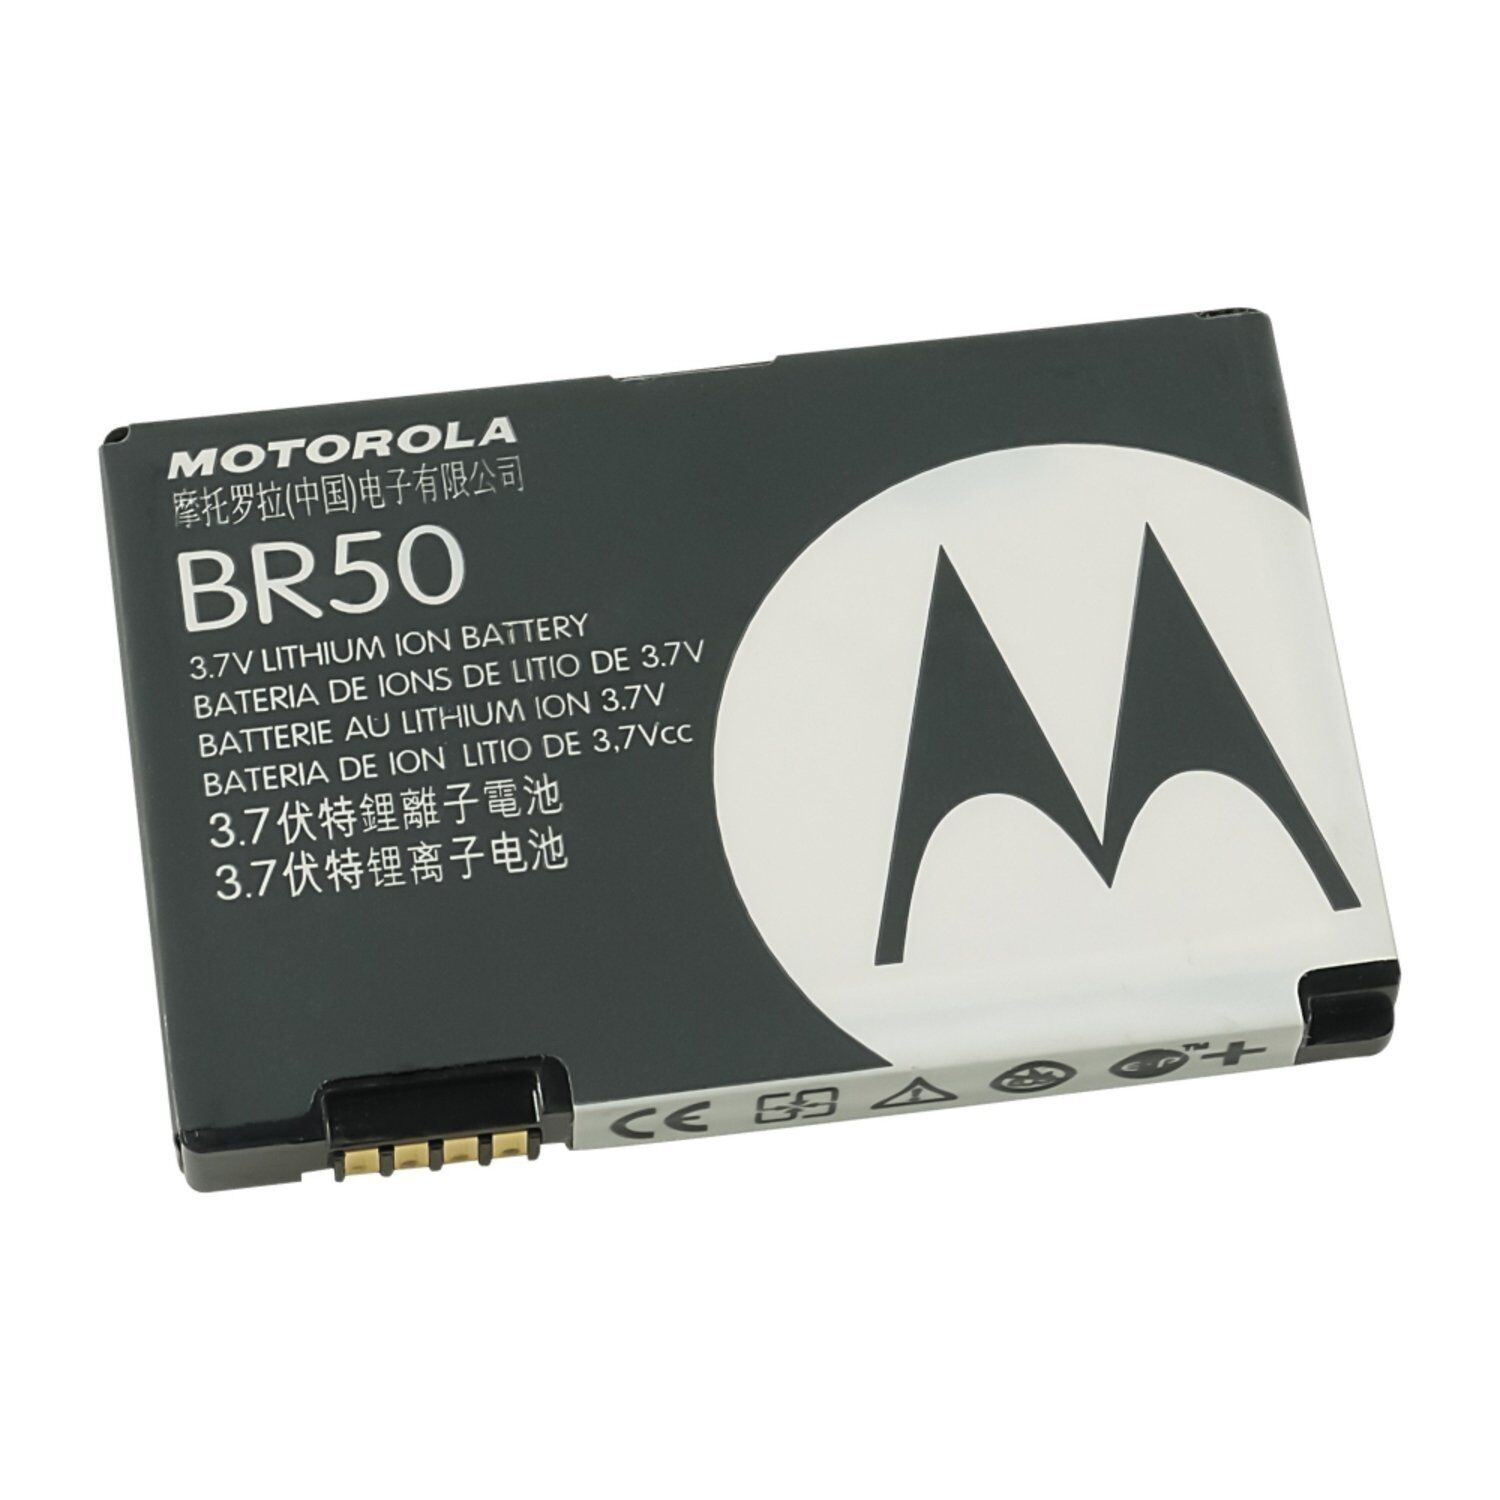 Replacement Battery for Motorola Razr V3 V3C V3I V3M V3X V3T V6 Pebl U6, BR50(FREE SHIPPING)